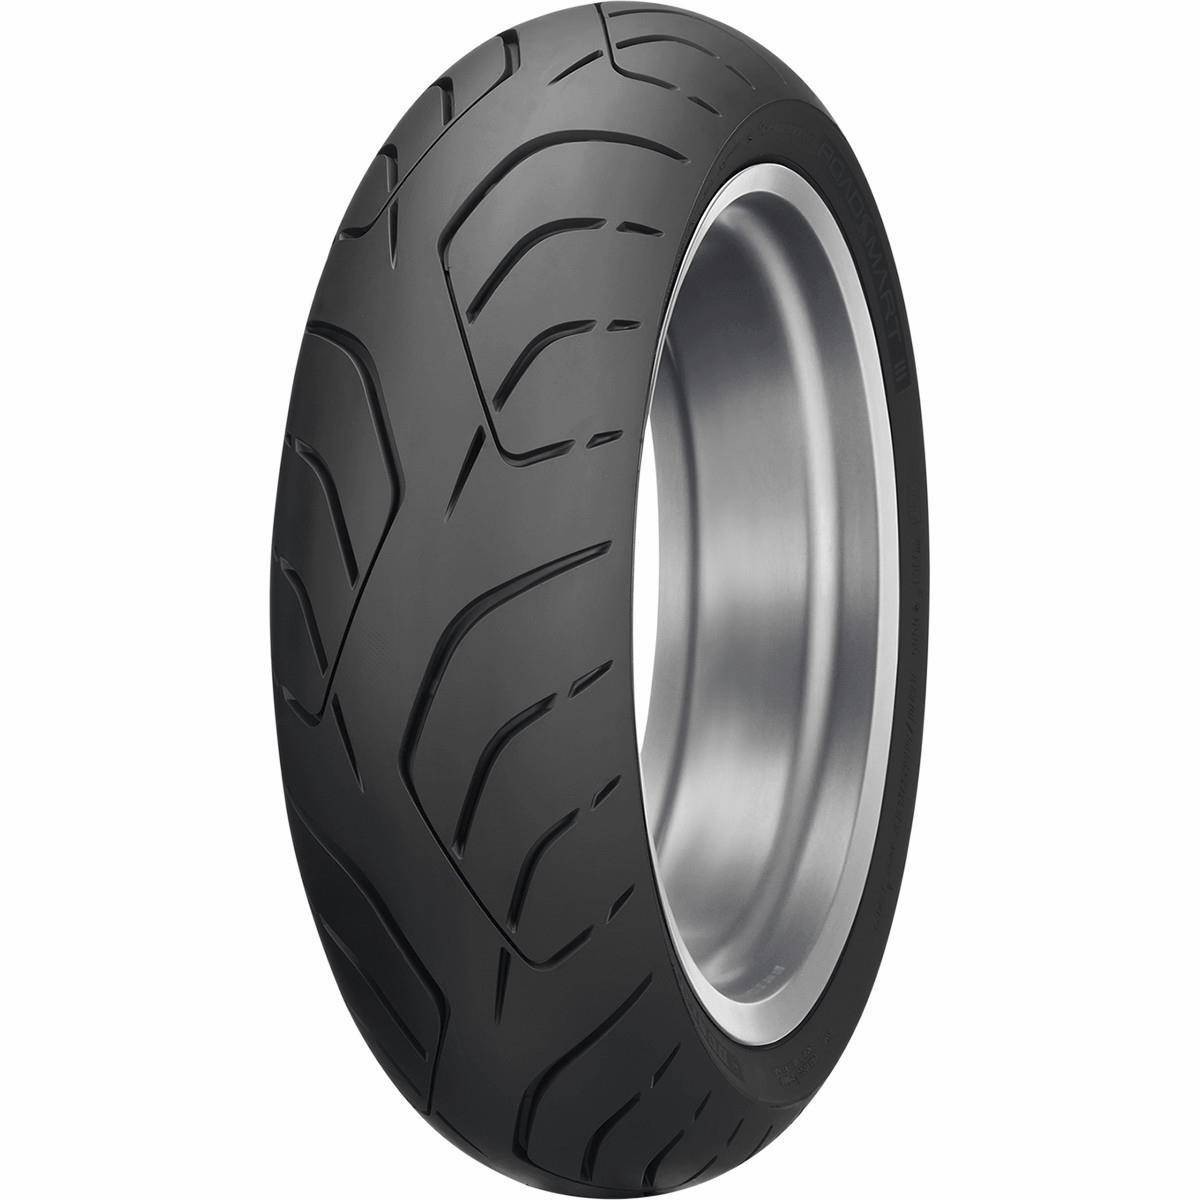 Dunlop Roadsmart Iii Motorcycle Tires Rebate Form